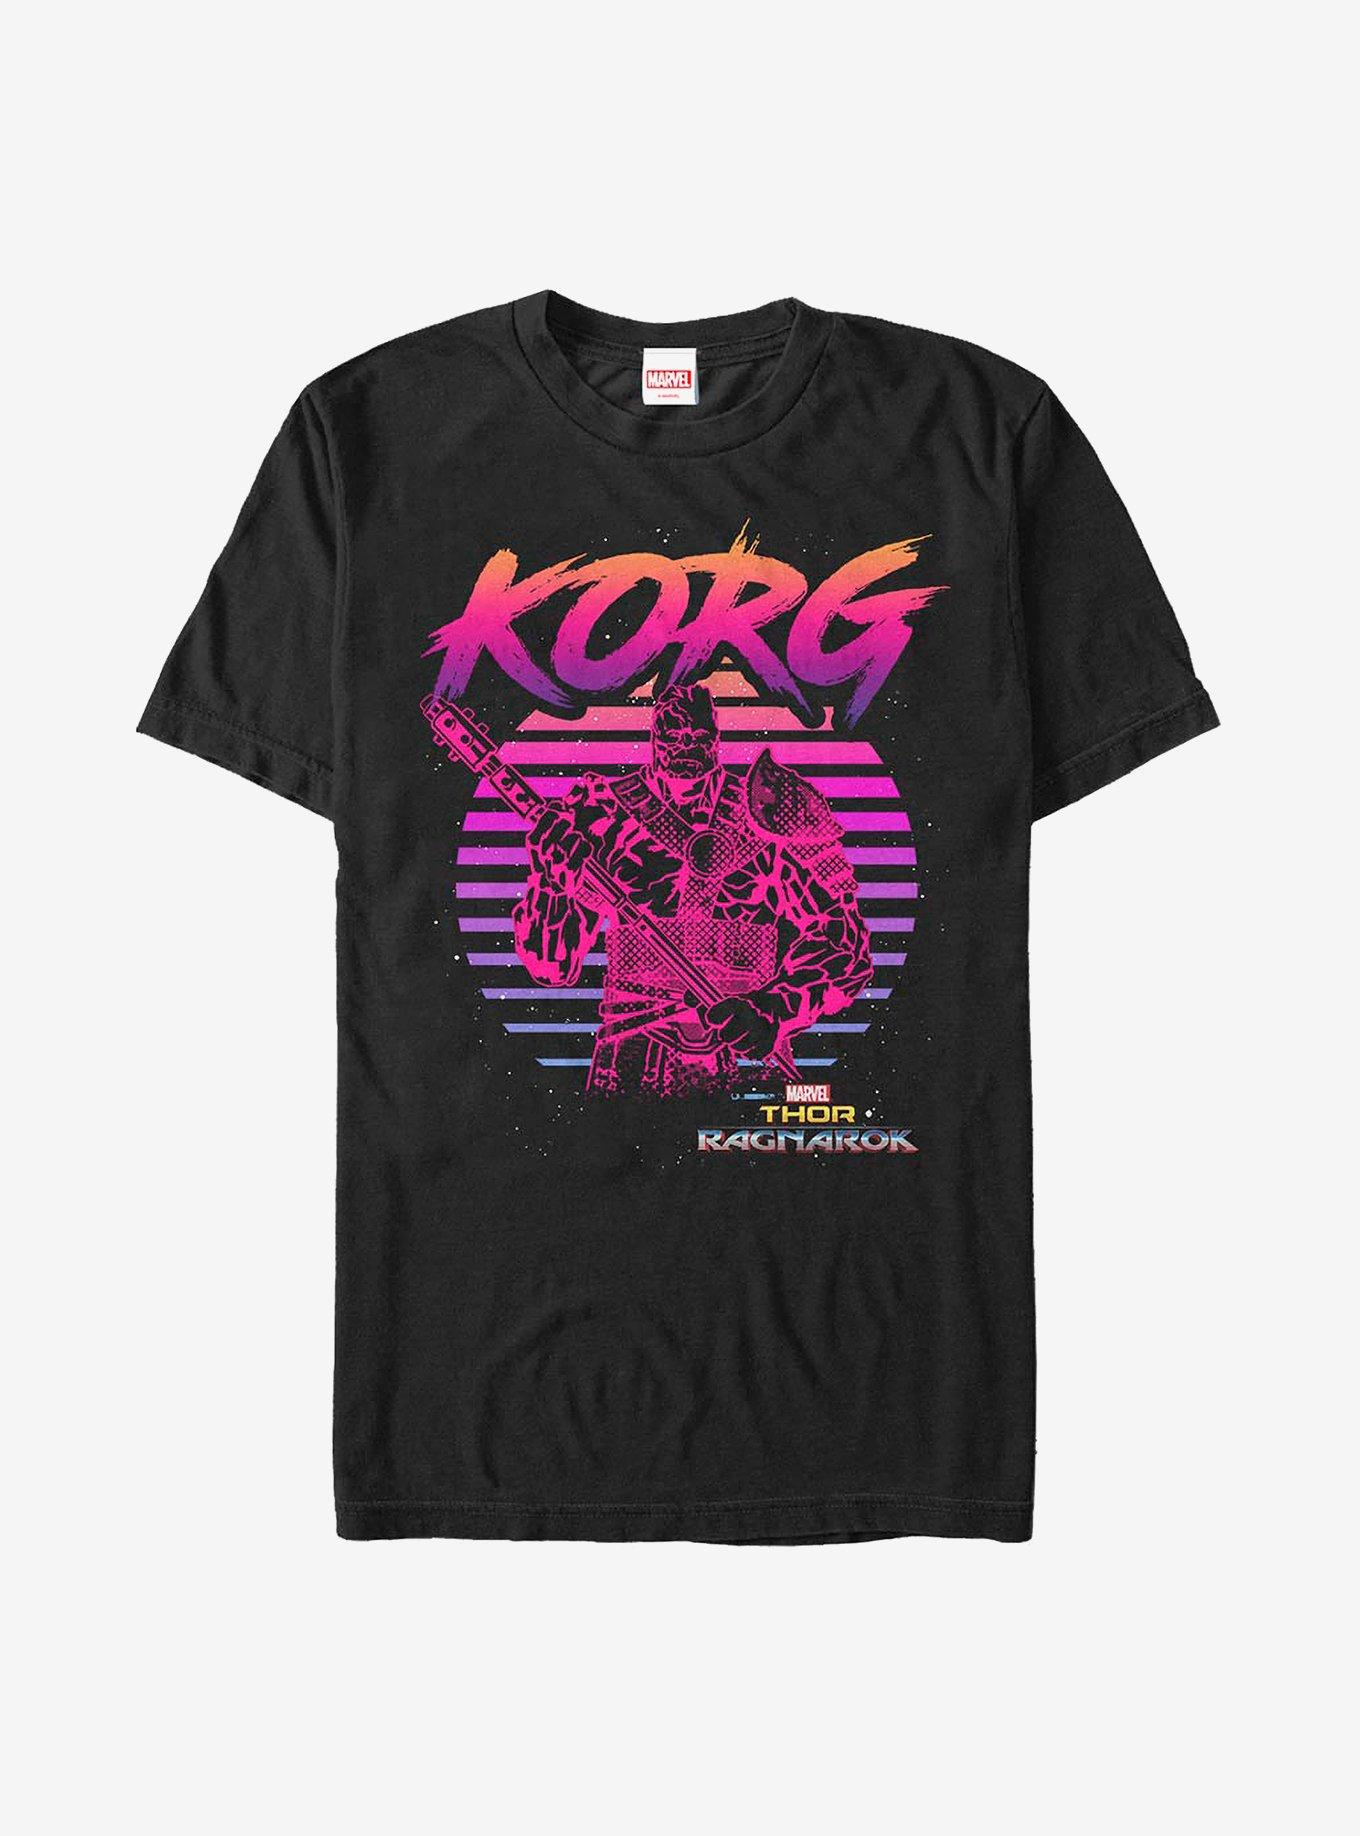 Marvel Thor Ragnarok 80's Korg T-Shirt